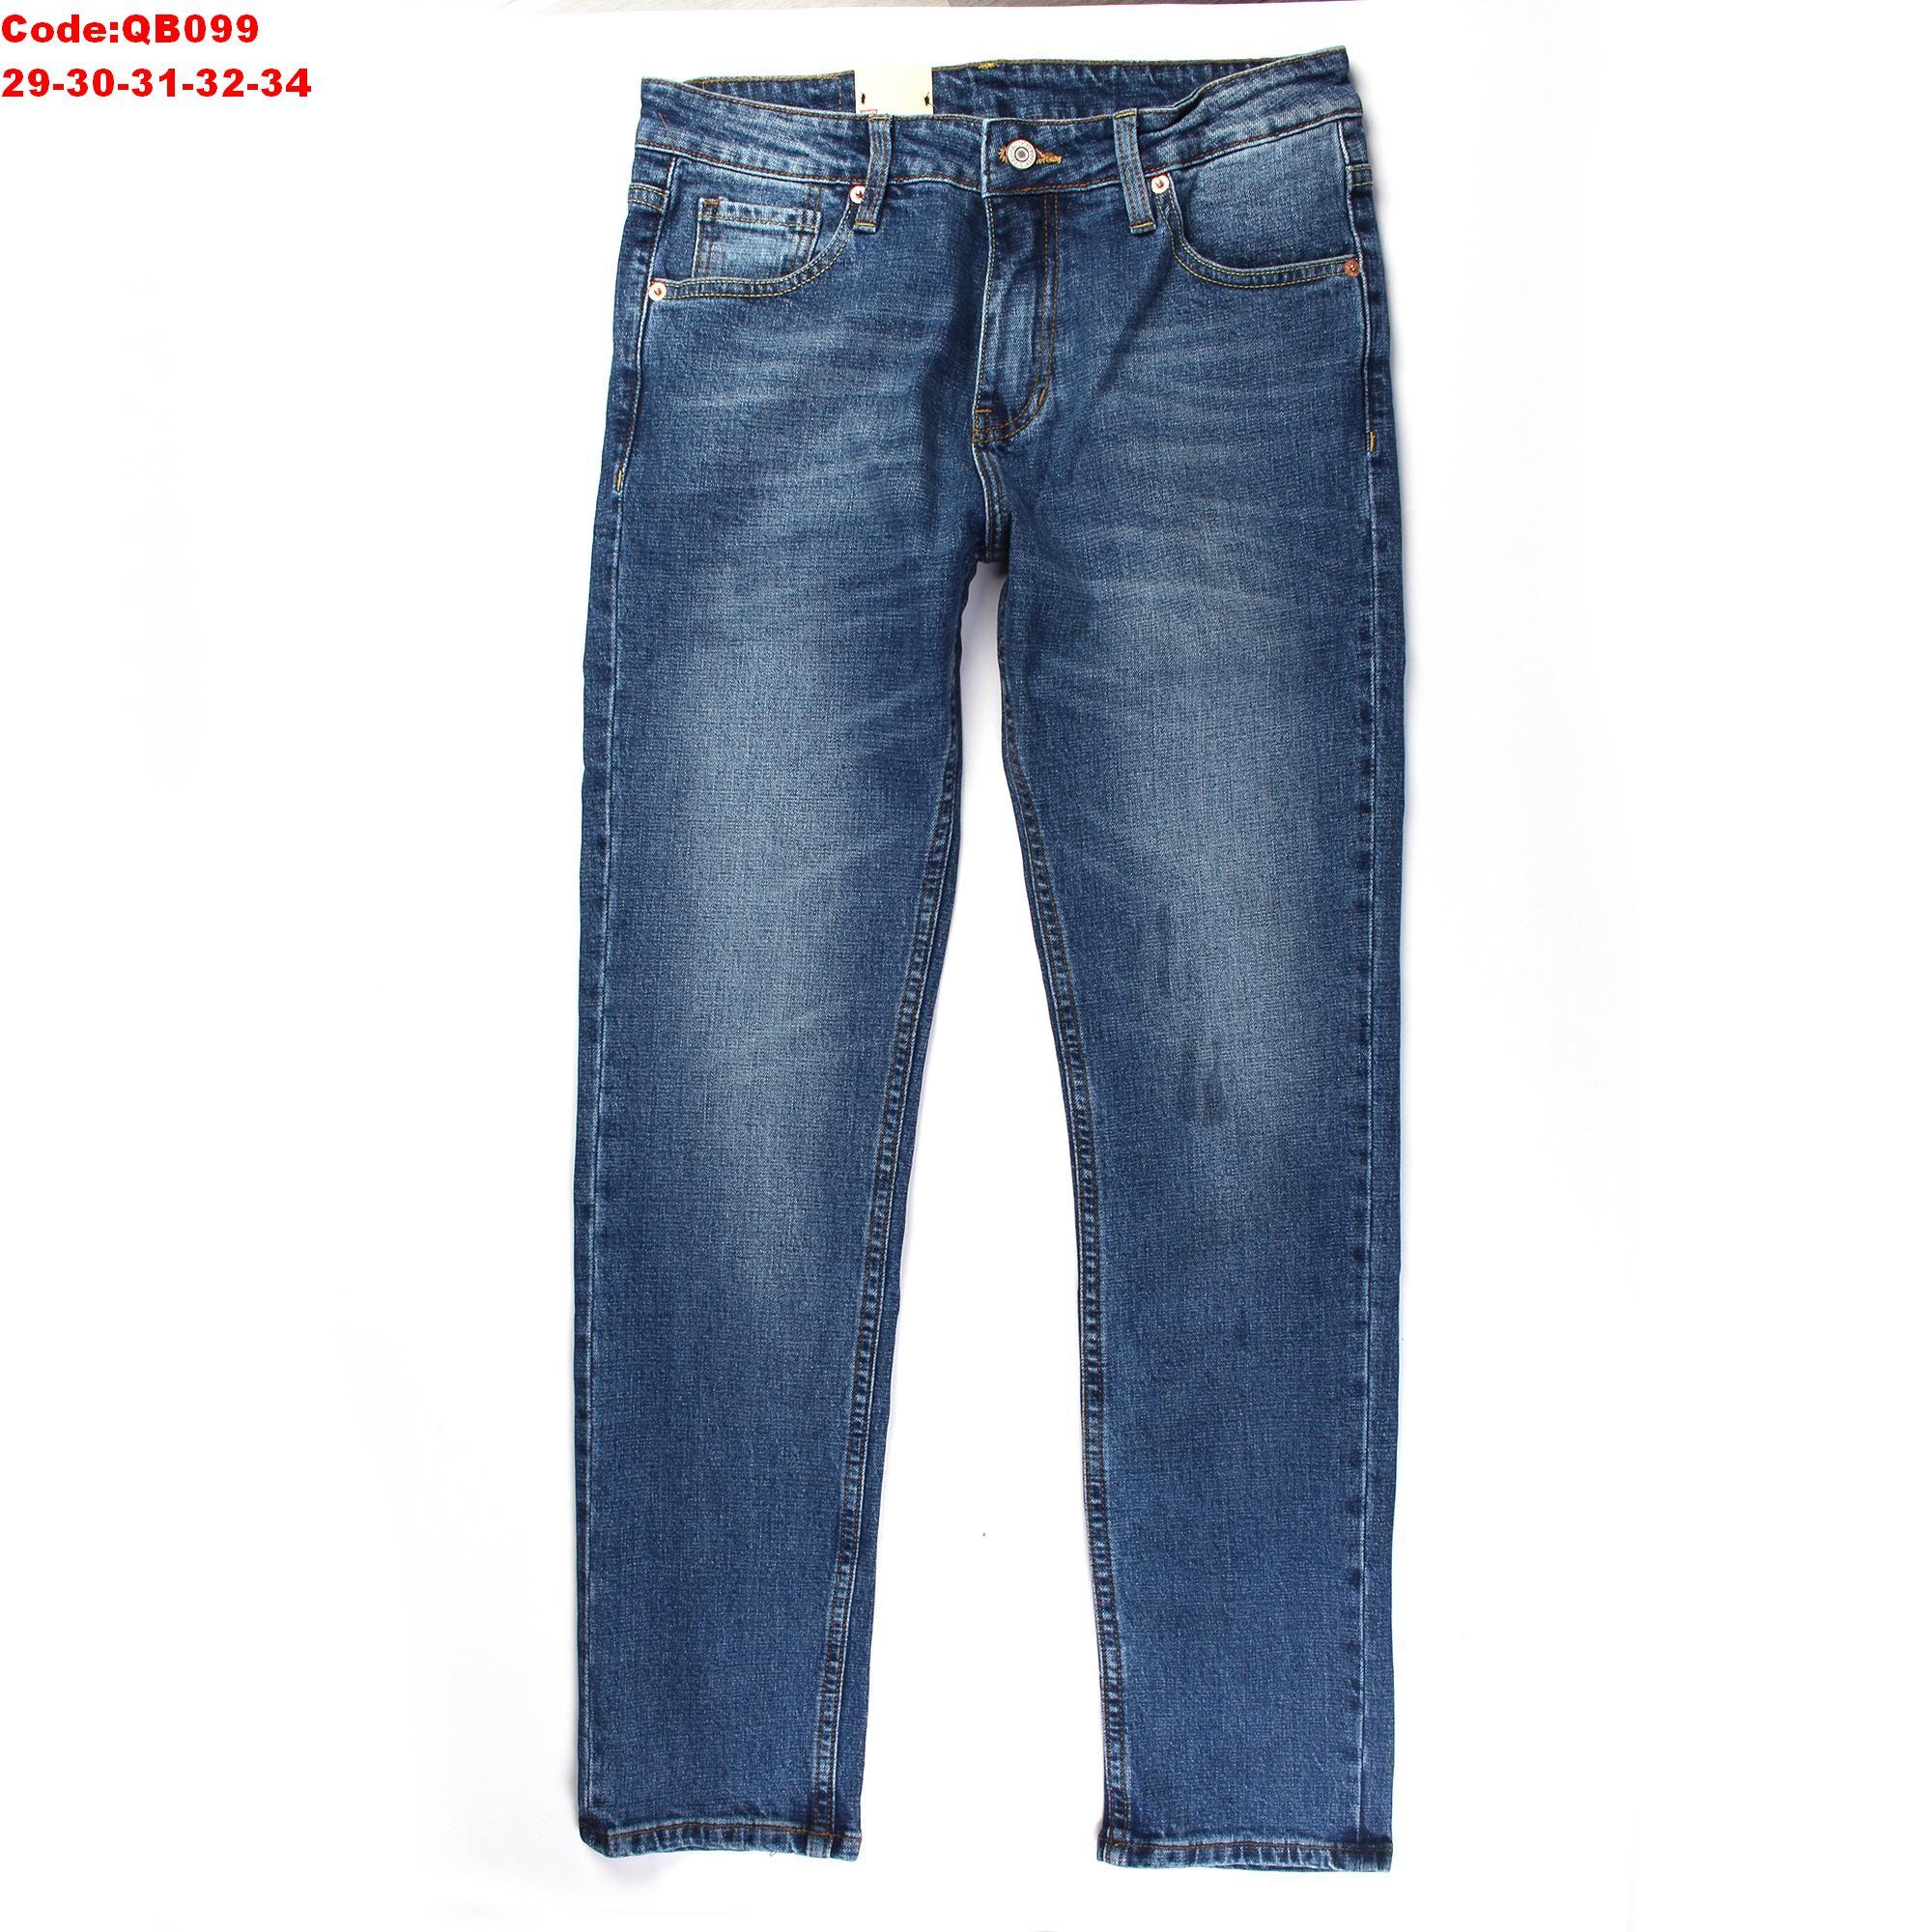 Quần jeans dài ống suông nam tính